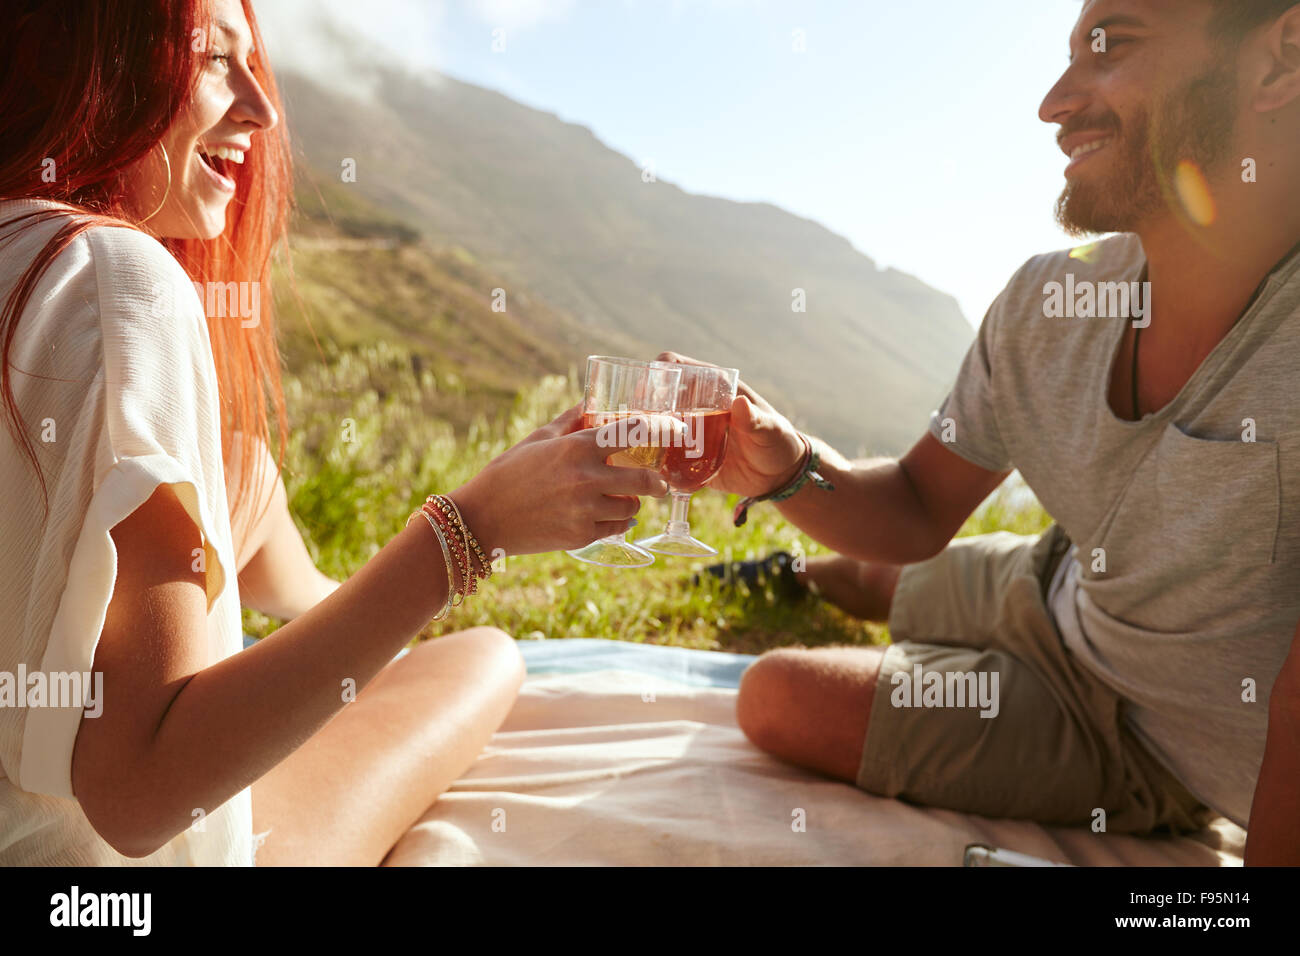 Aufnahme eines fröhlichen jungen Paares Wein trinken und genießen ein Picknick.  Junger Mann mit ihrer Freundin im Urlaub auf dem Rasen sitzen Stockfoto